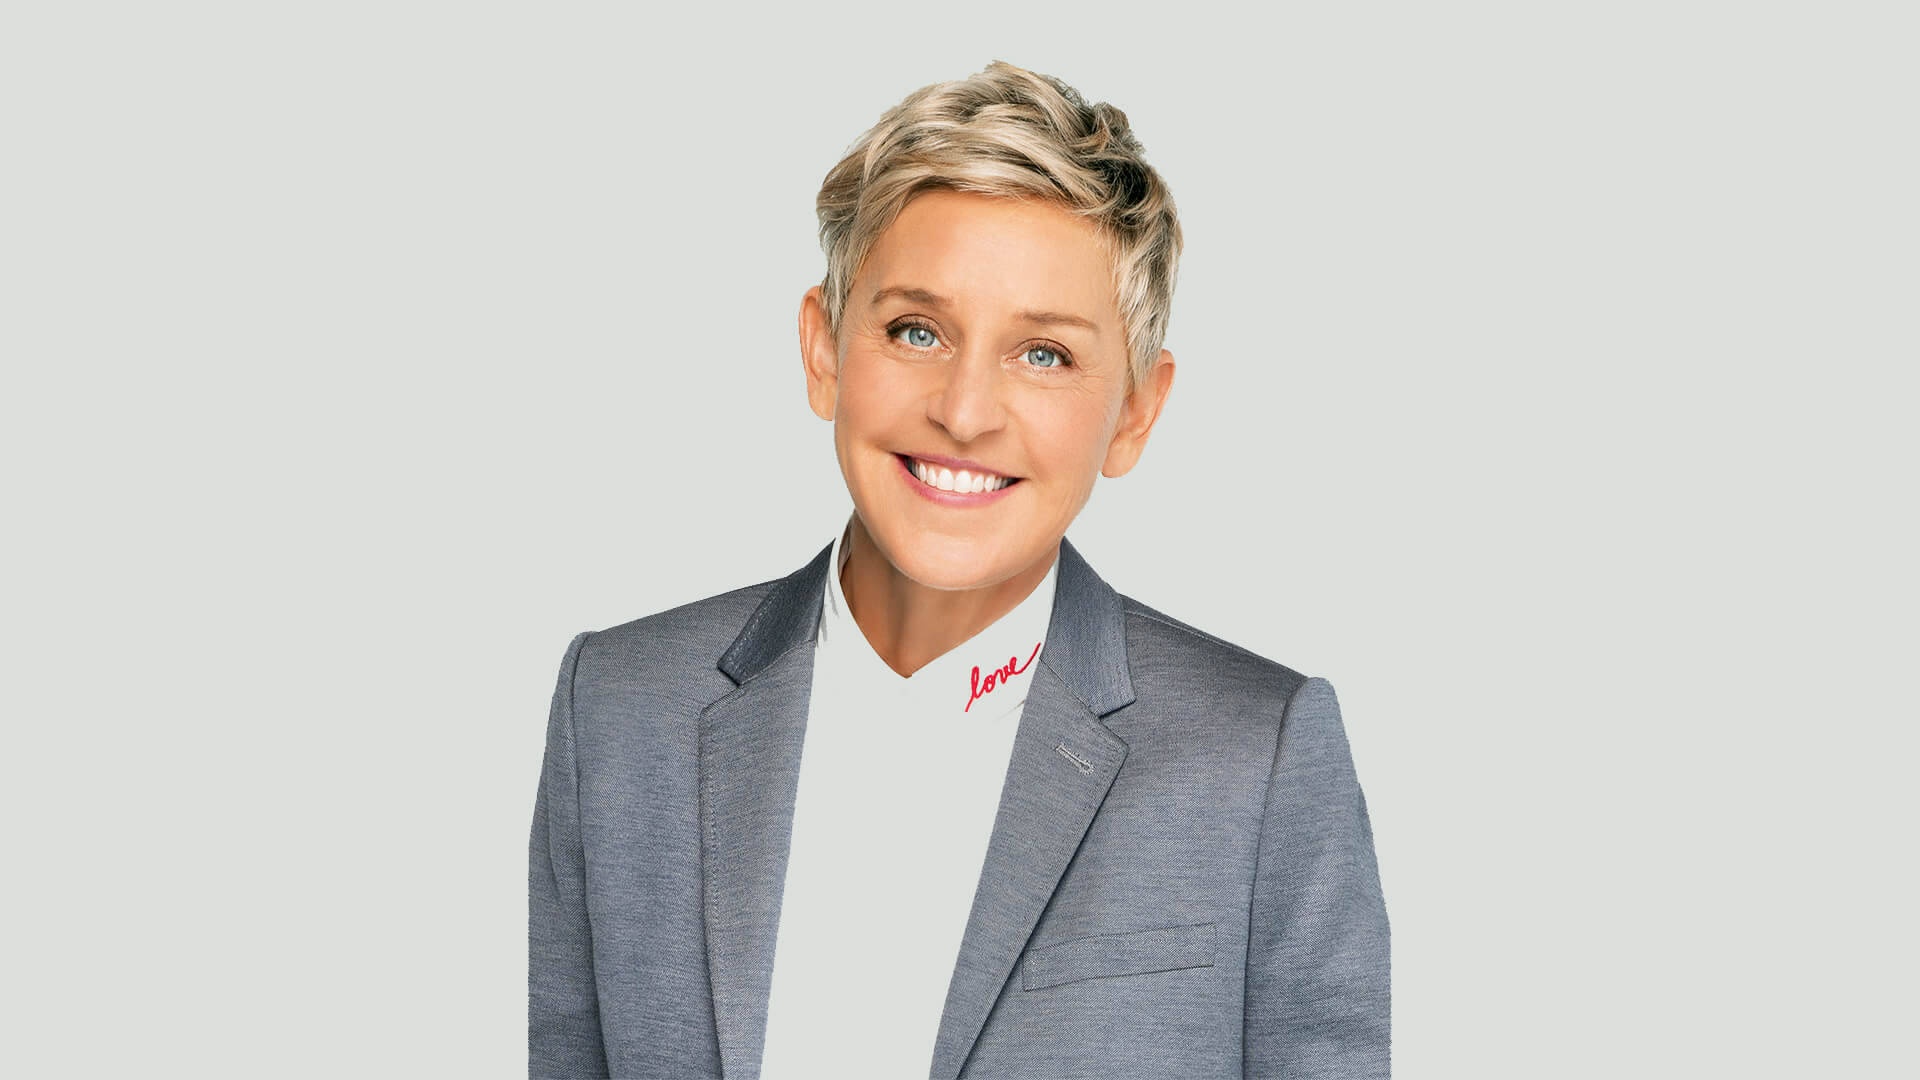 Ellen Degeneres Light Grey Suit